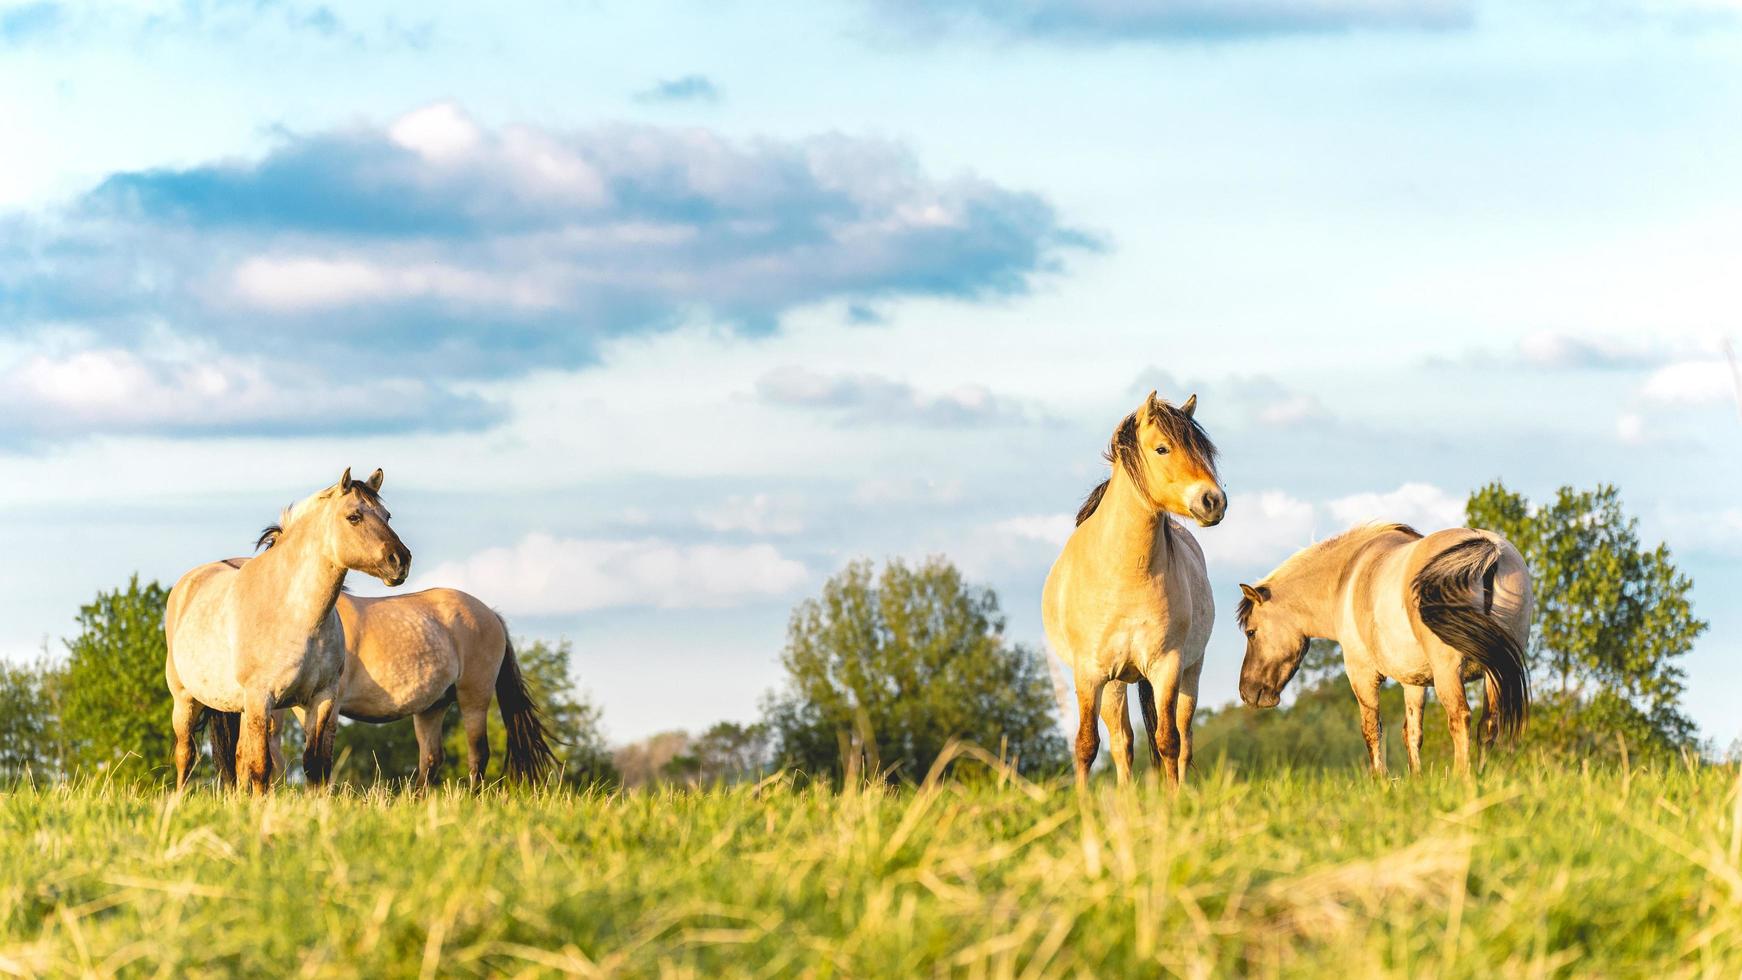 caballos salvajes en los campos en wassenaar los países bajos. foto